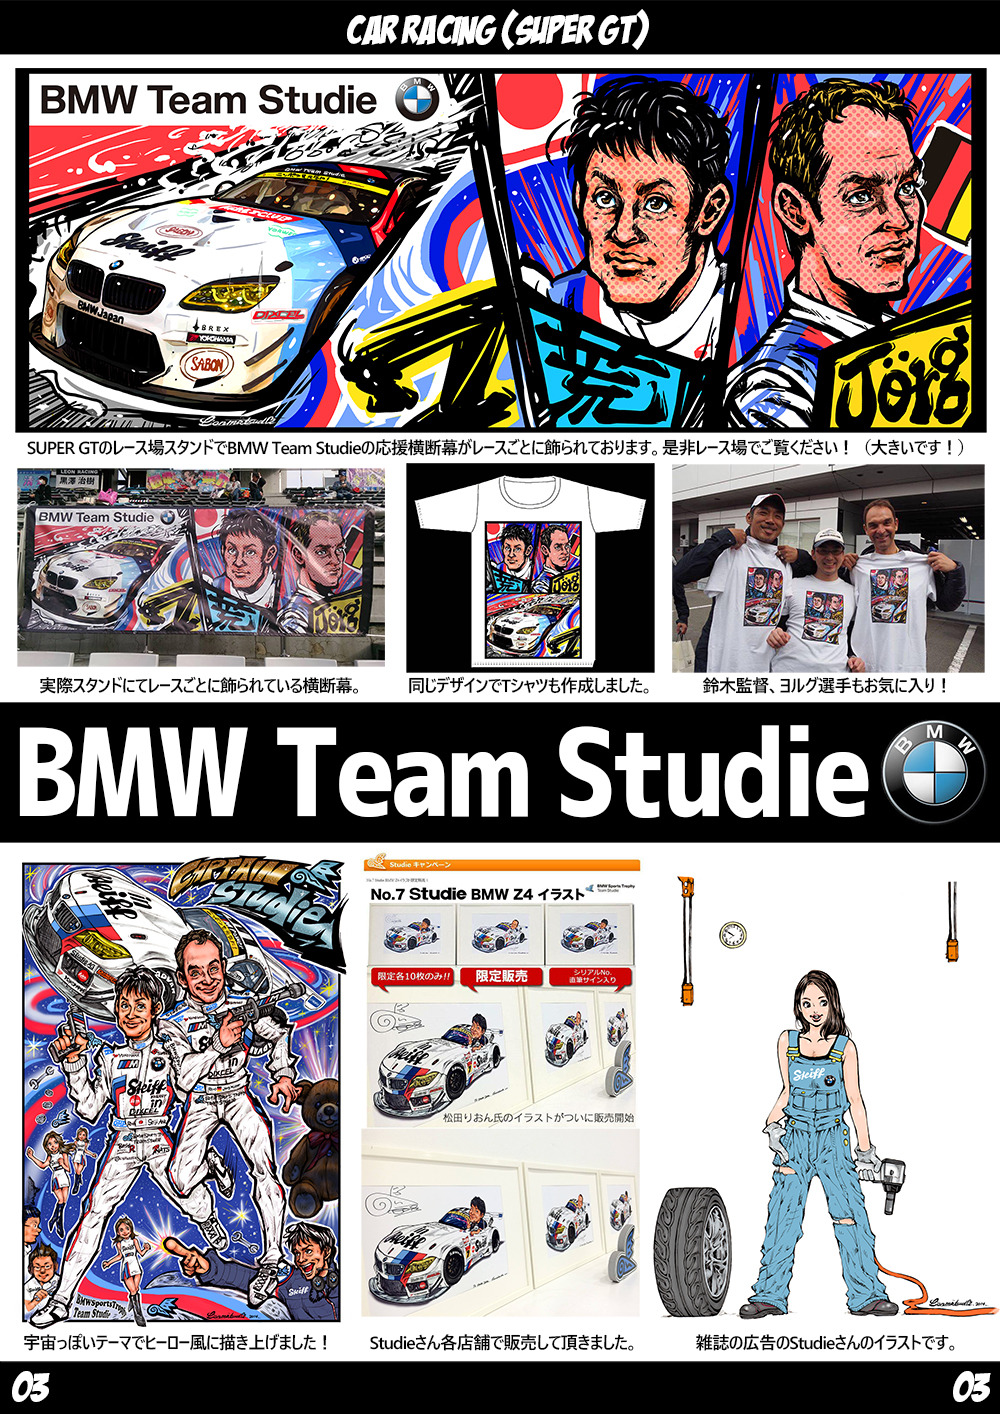 ポートフォリオ3(BMW Team Studie)